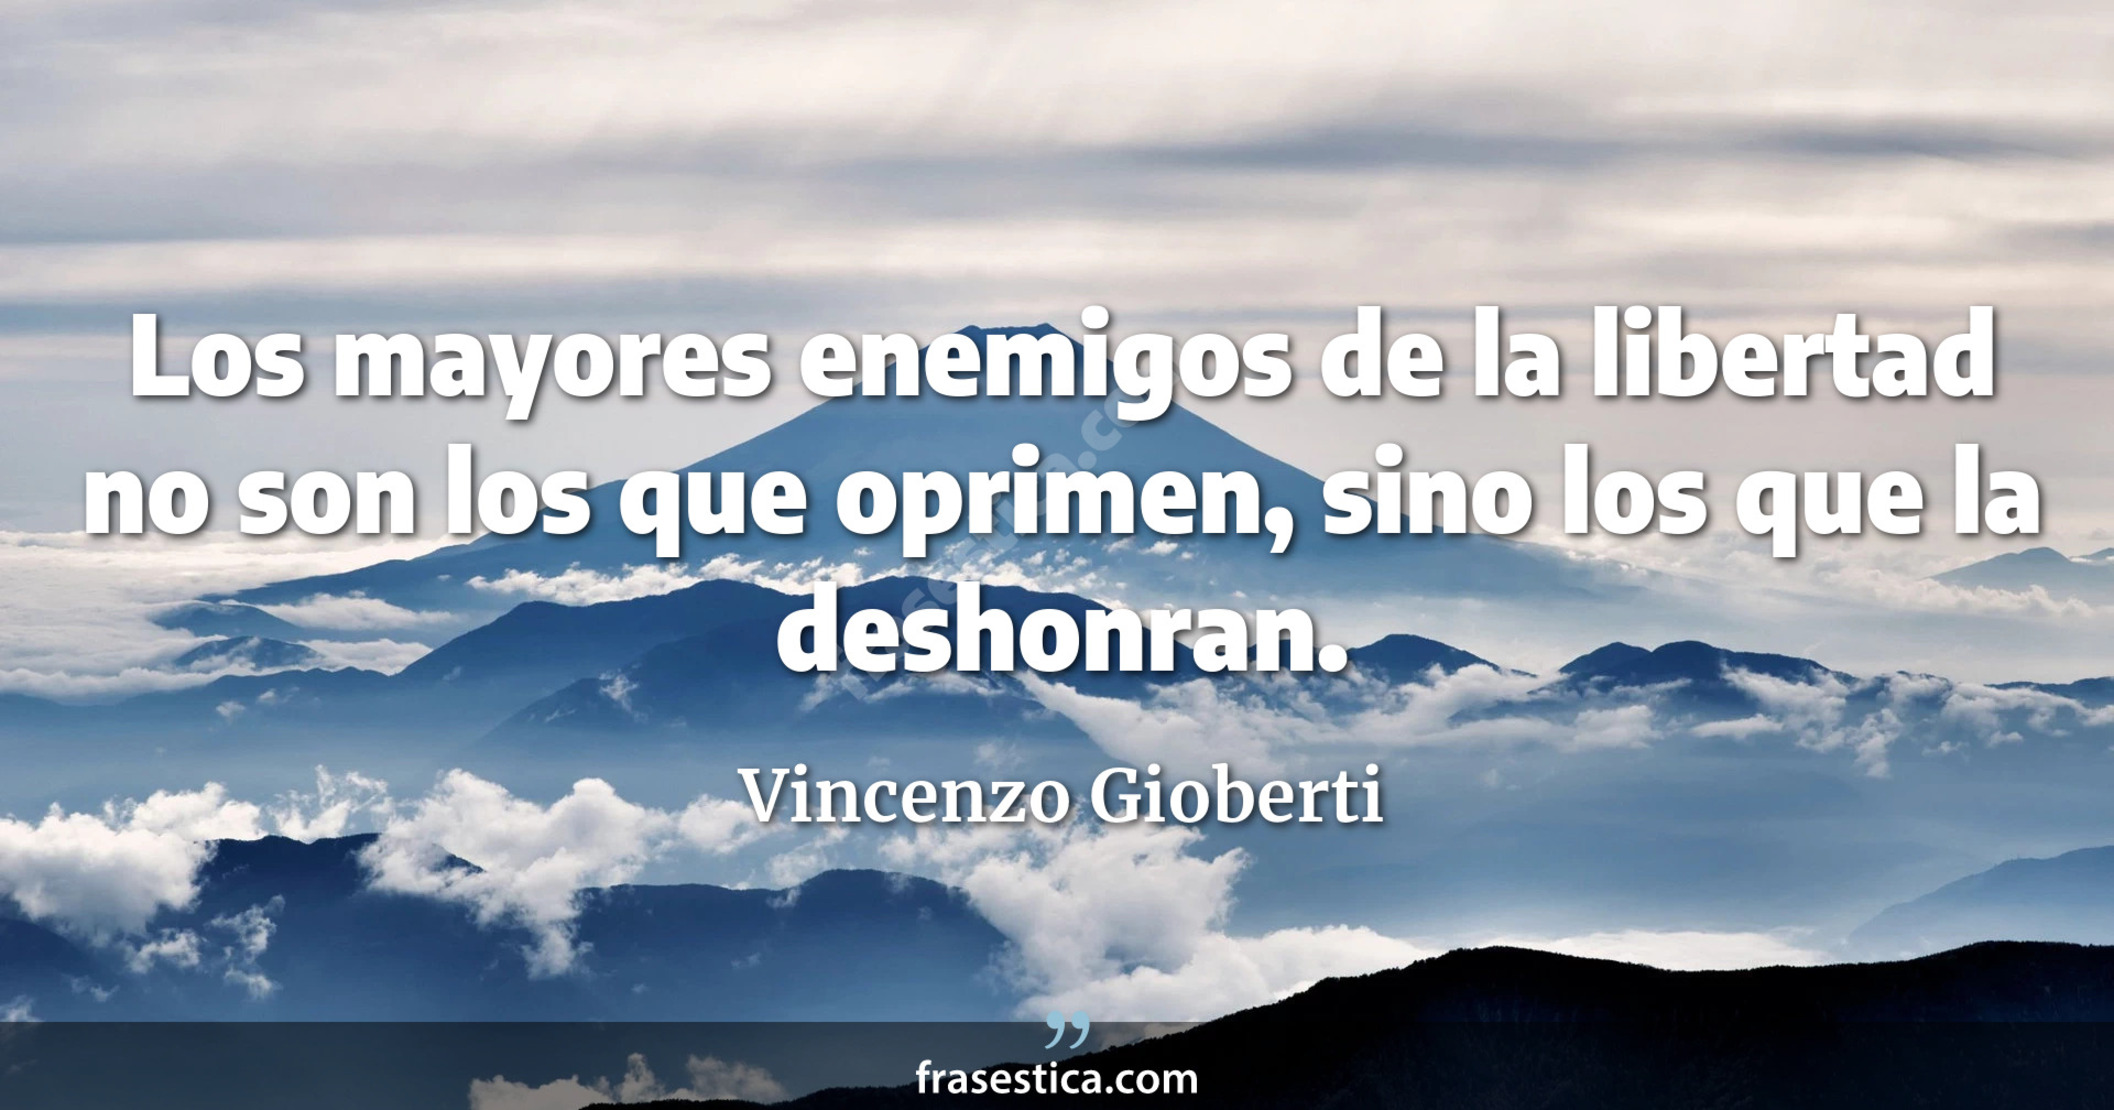 Los mayores enemigos de la libertad no son los que oprimen, sino los que la deshonran. - Vincenzo Gioberti